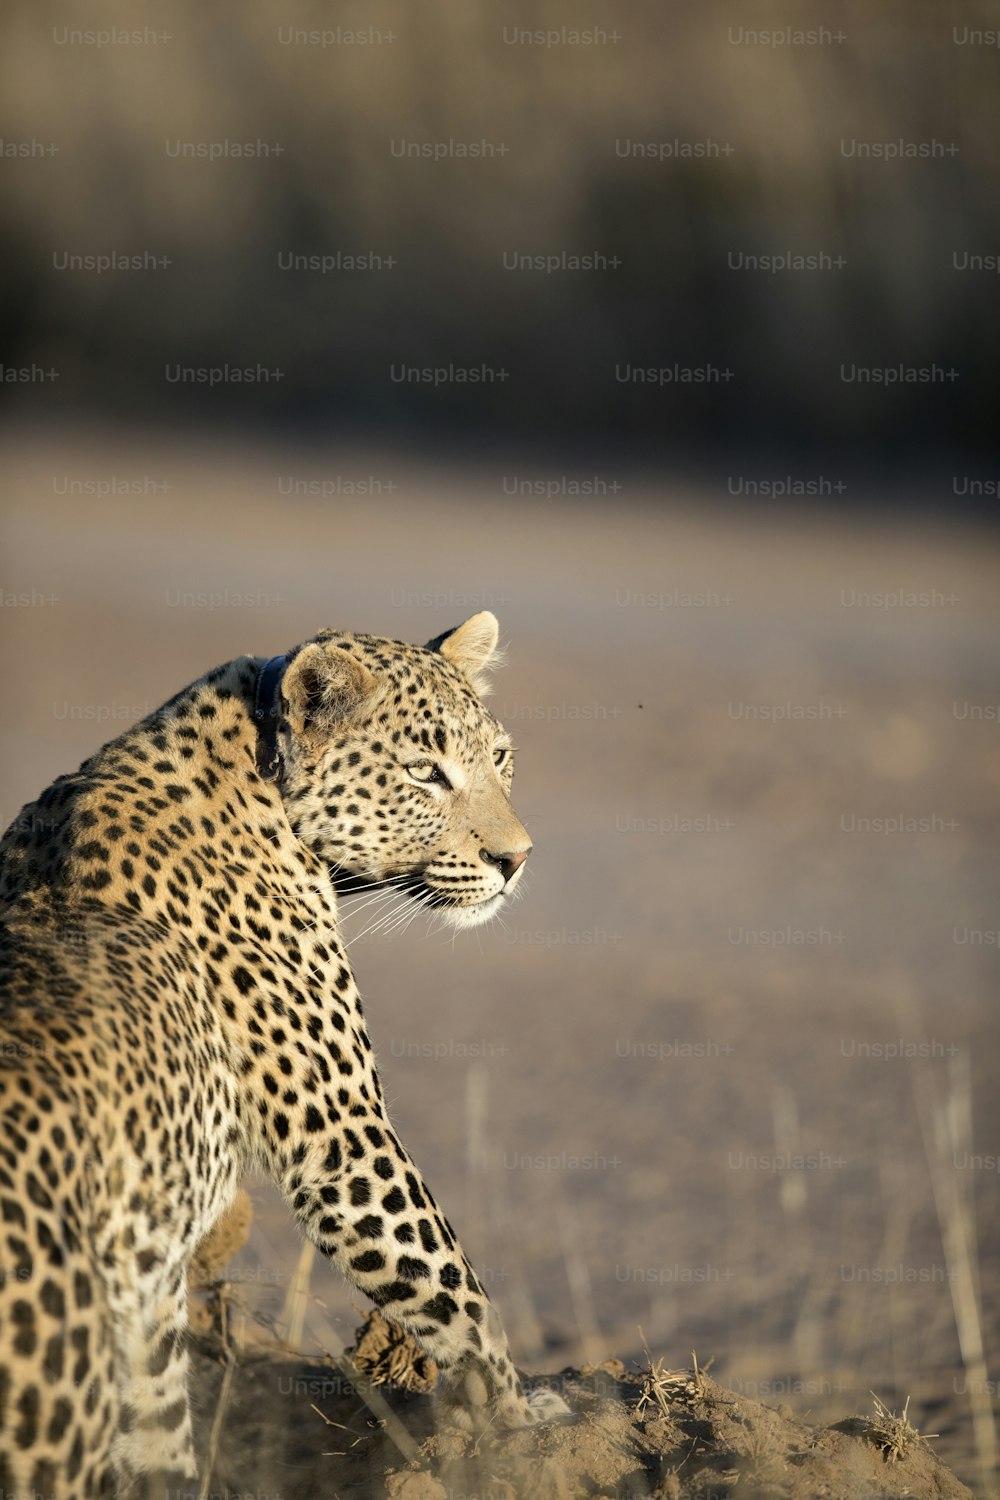 Leopard resting in Etosha National Park, Namibia.